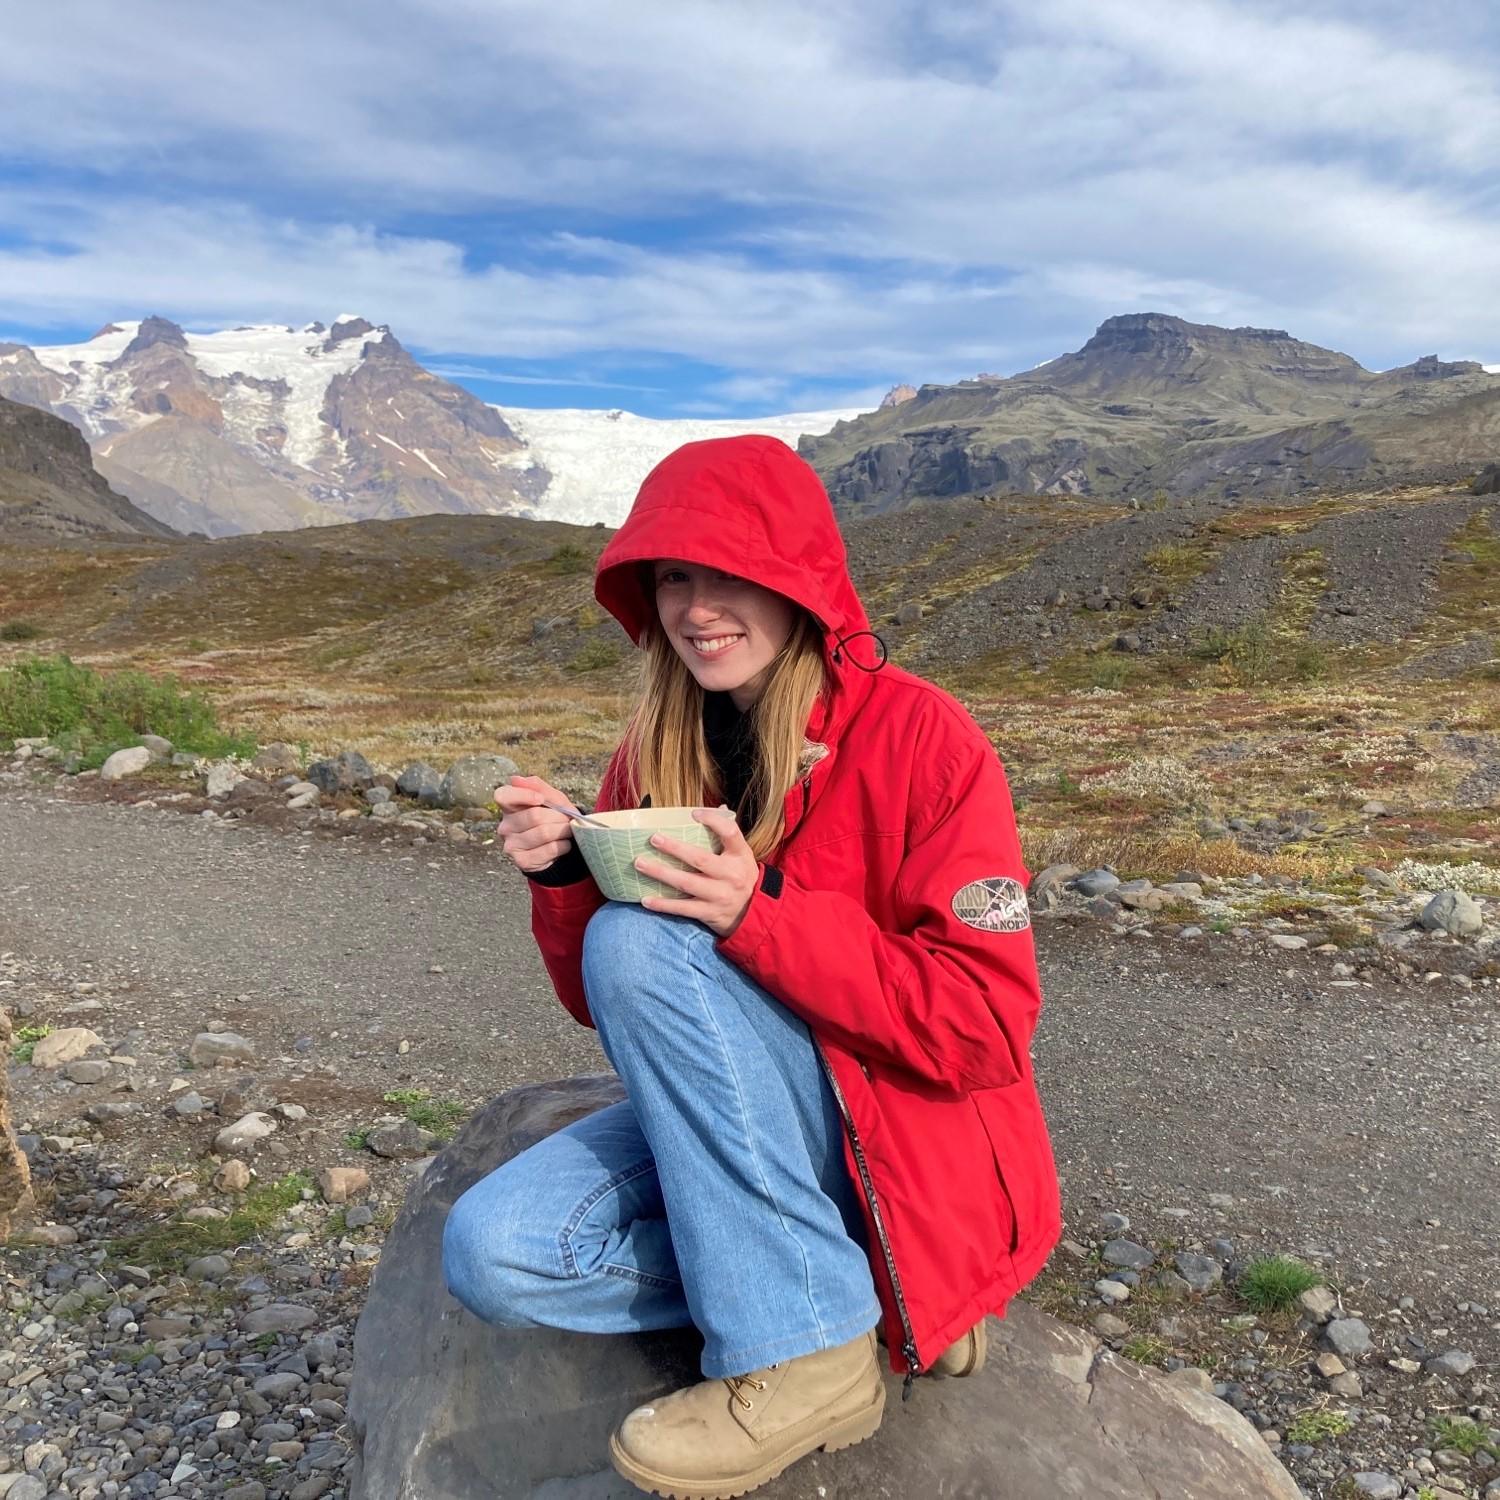 Fien in IJsland lachend naar de foto met een rode regenjas. Ze zit op een rotsblok en eet iets uit een kommetje